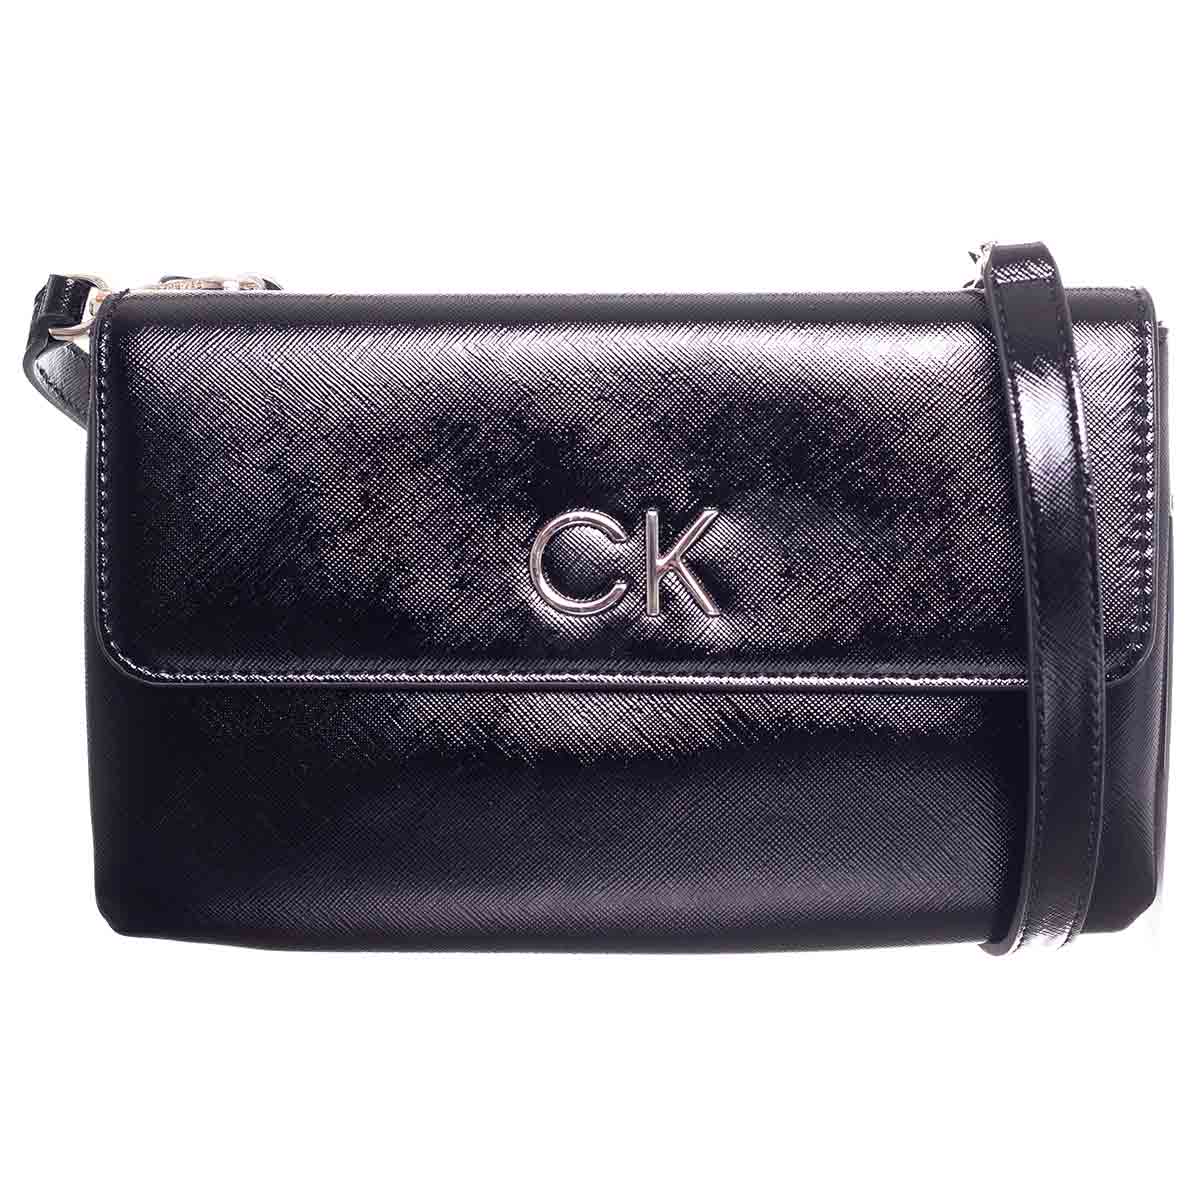 Calvin Klein Woman's Bag 8719856574352